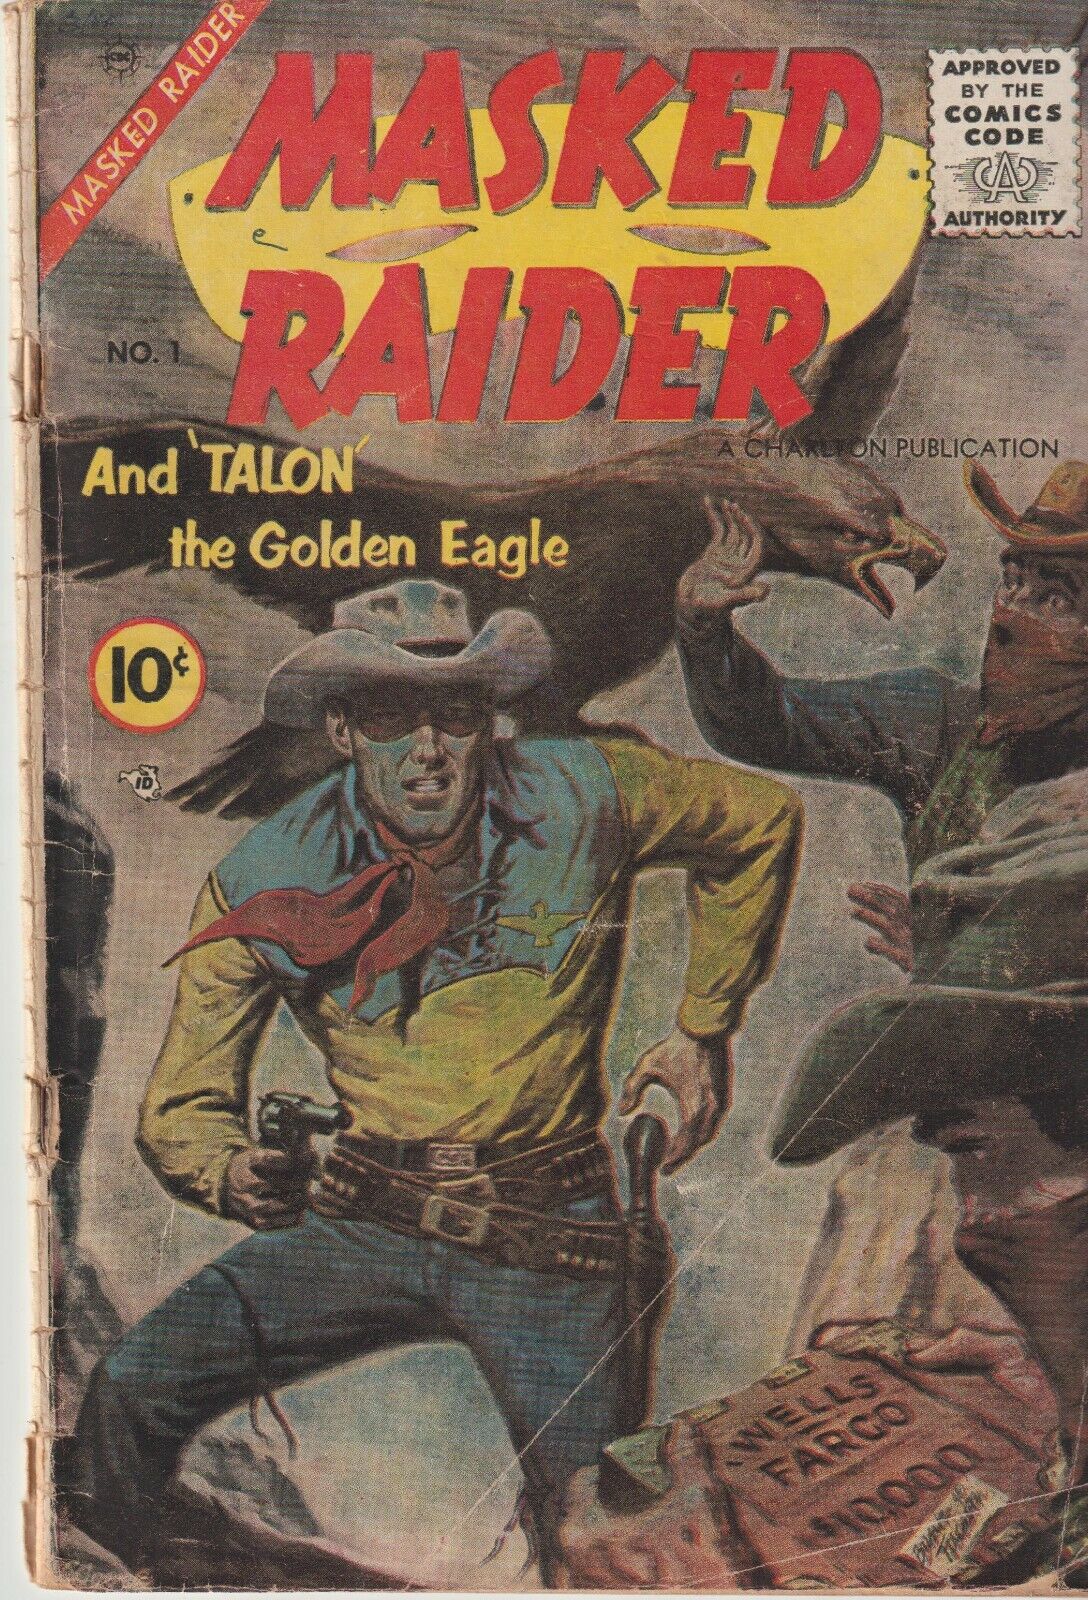 MASKED RAIDER Vol #1 Issue #1 1955 Good Condition